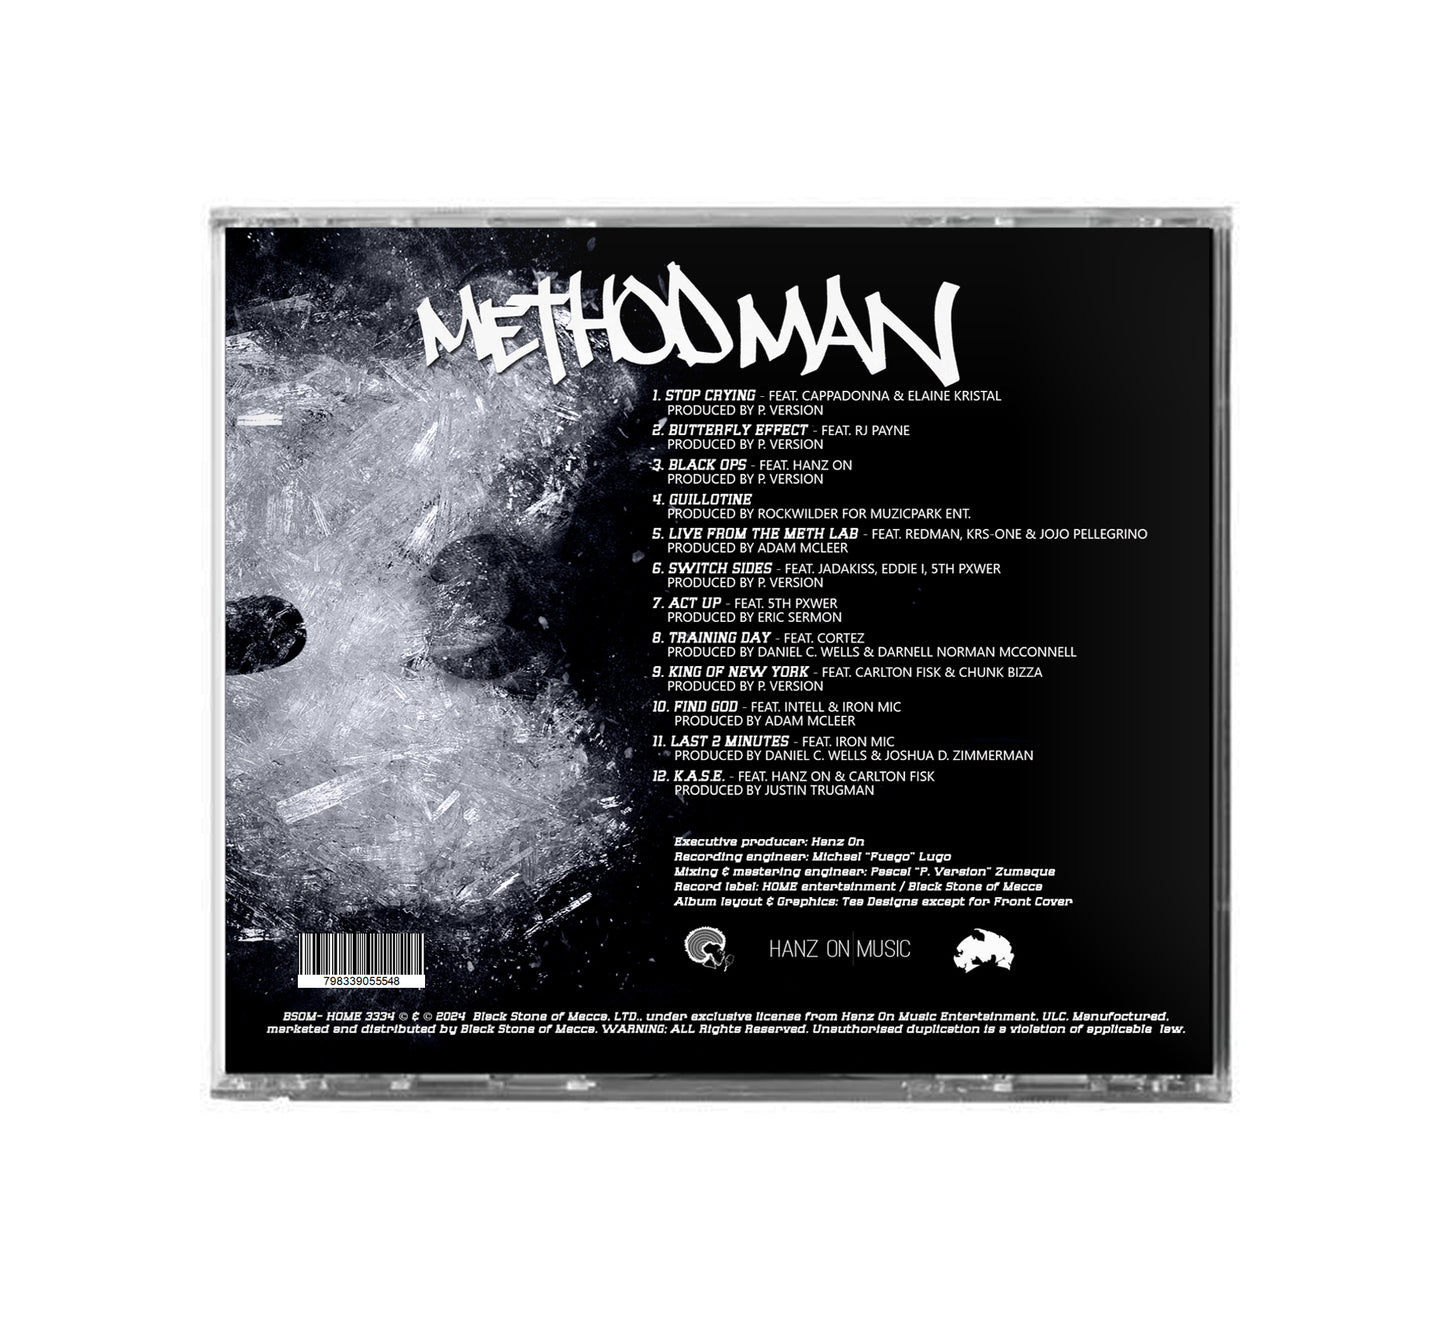 Method Man - Meth Lab Season 3: The Rehab CD